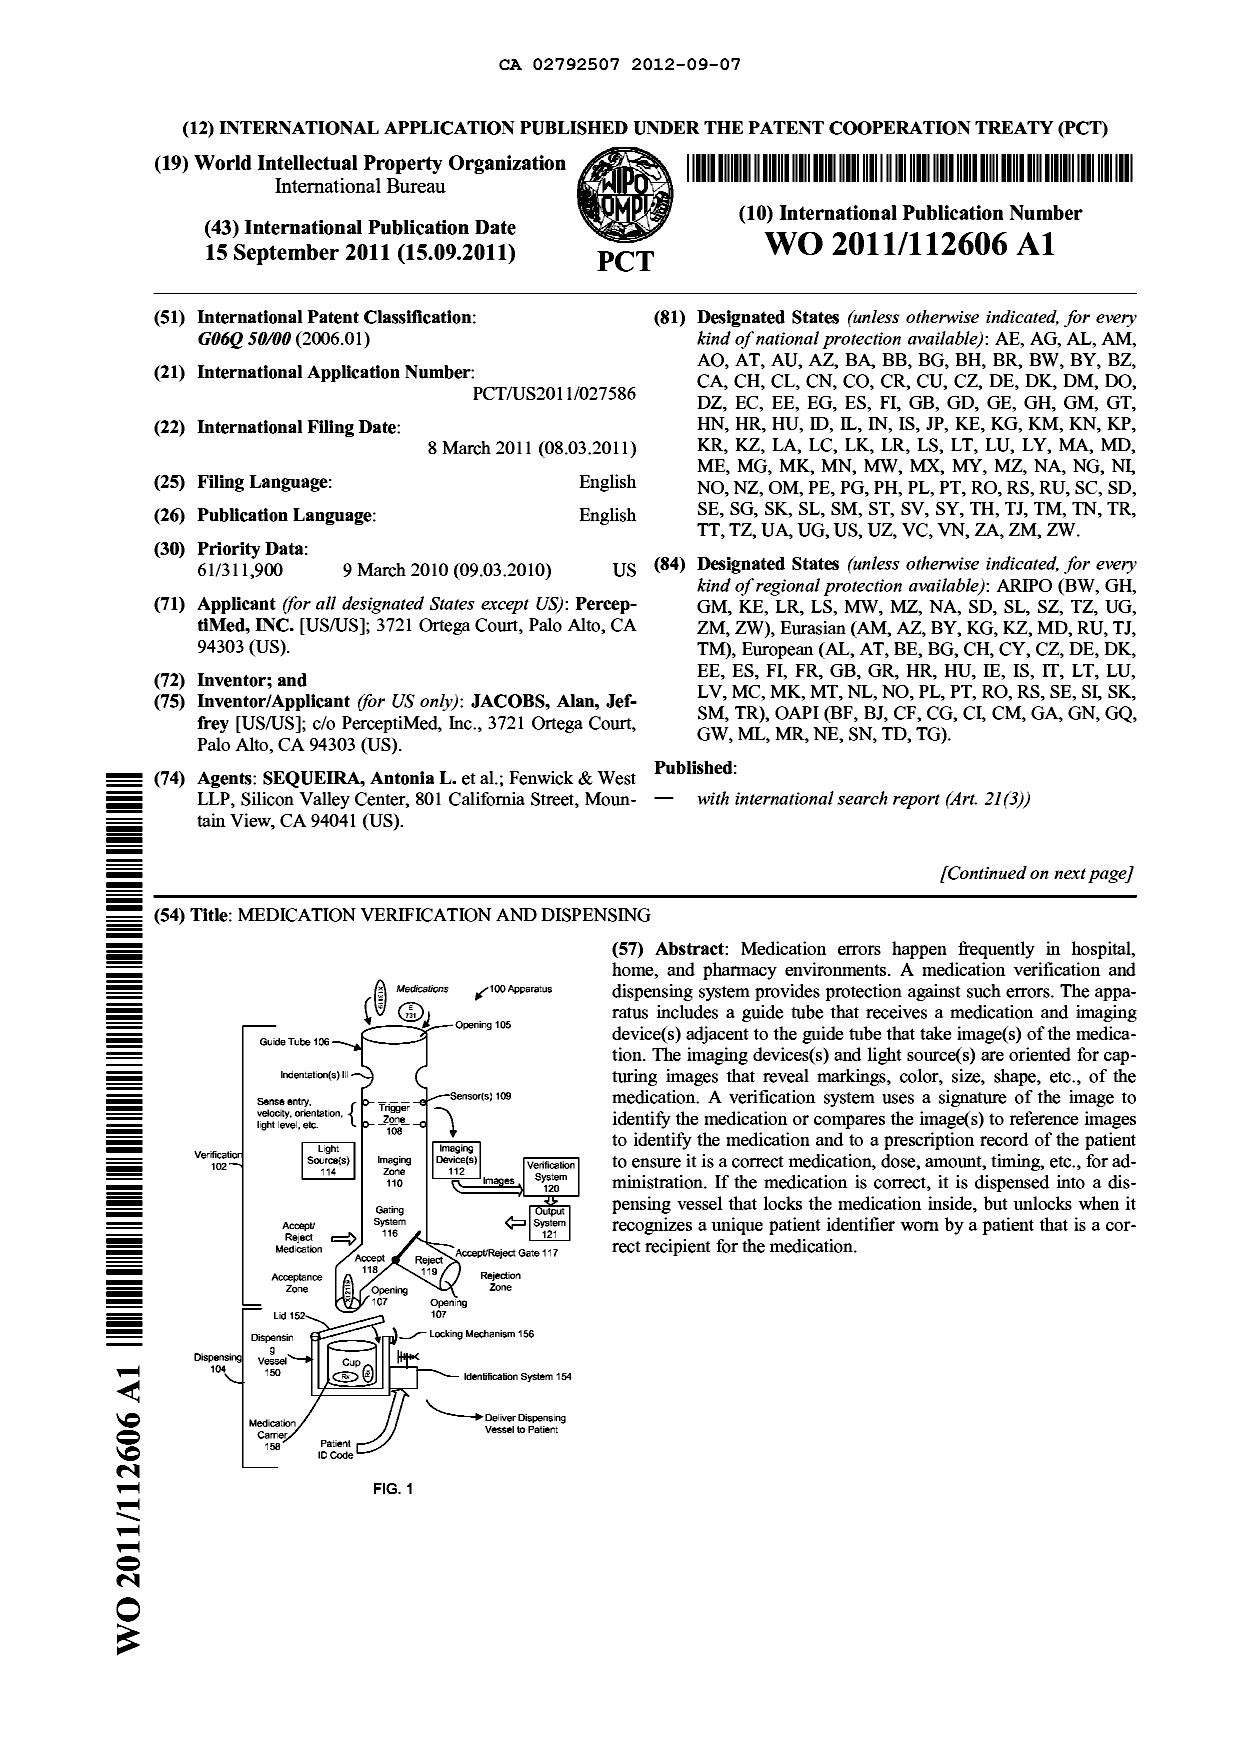 Document de brevet canadien 2792507. Abrégé 20120907. Image 1 de 2